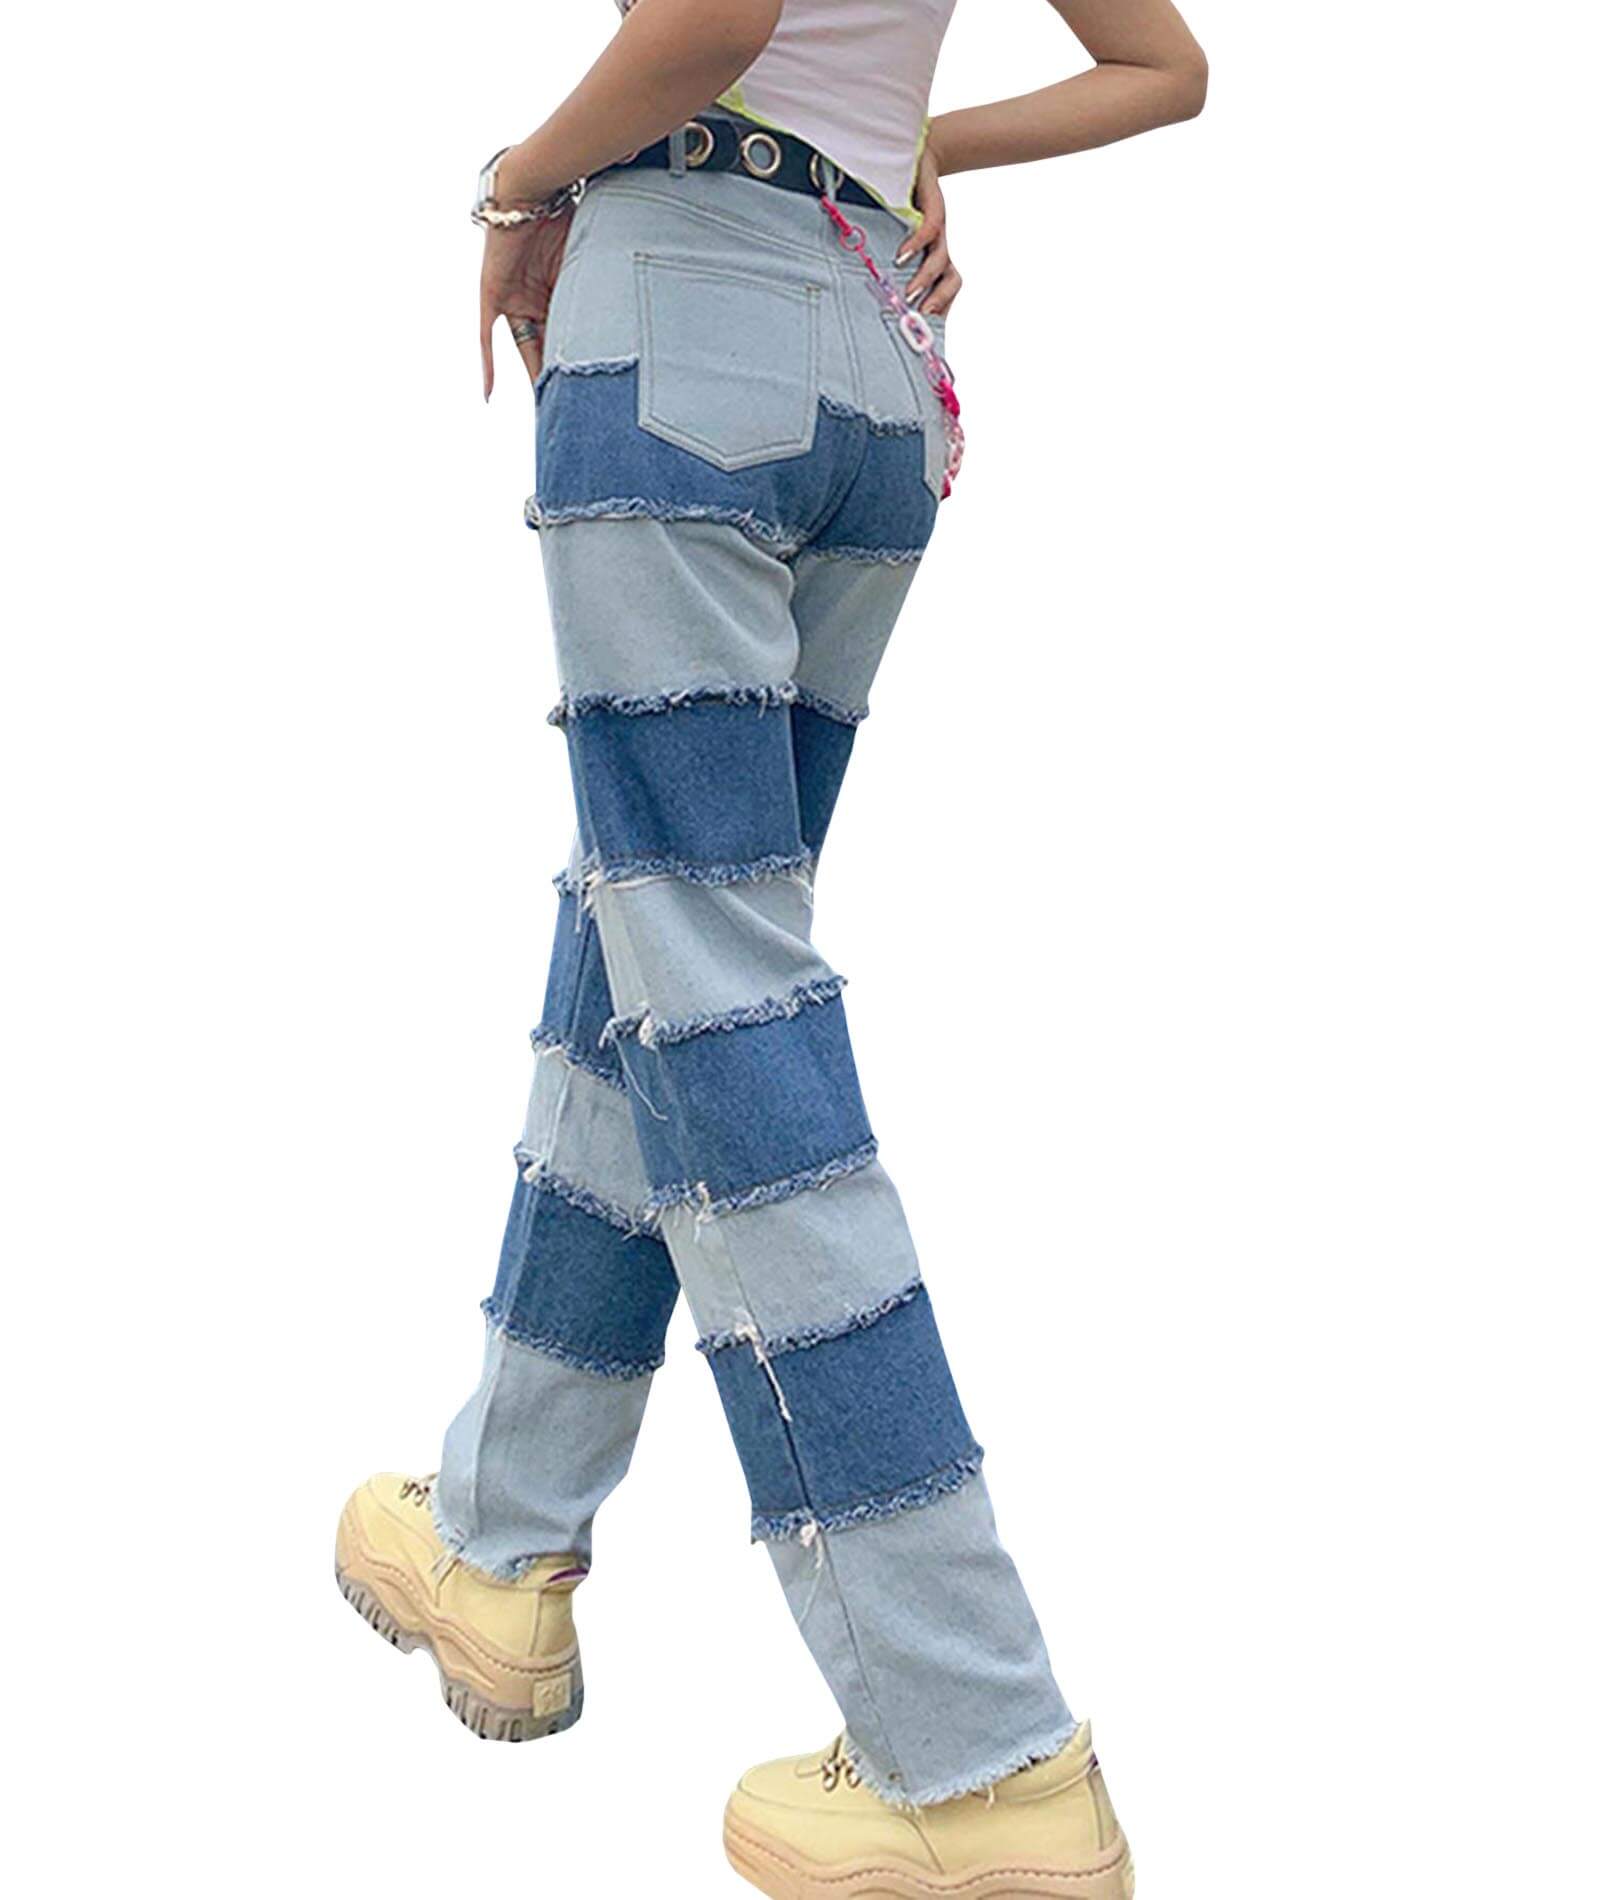  Women's High Waist Color Block Patch Denim Jeans Casual Straight Hip Hop Pants